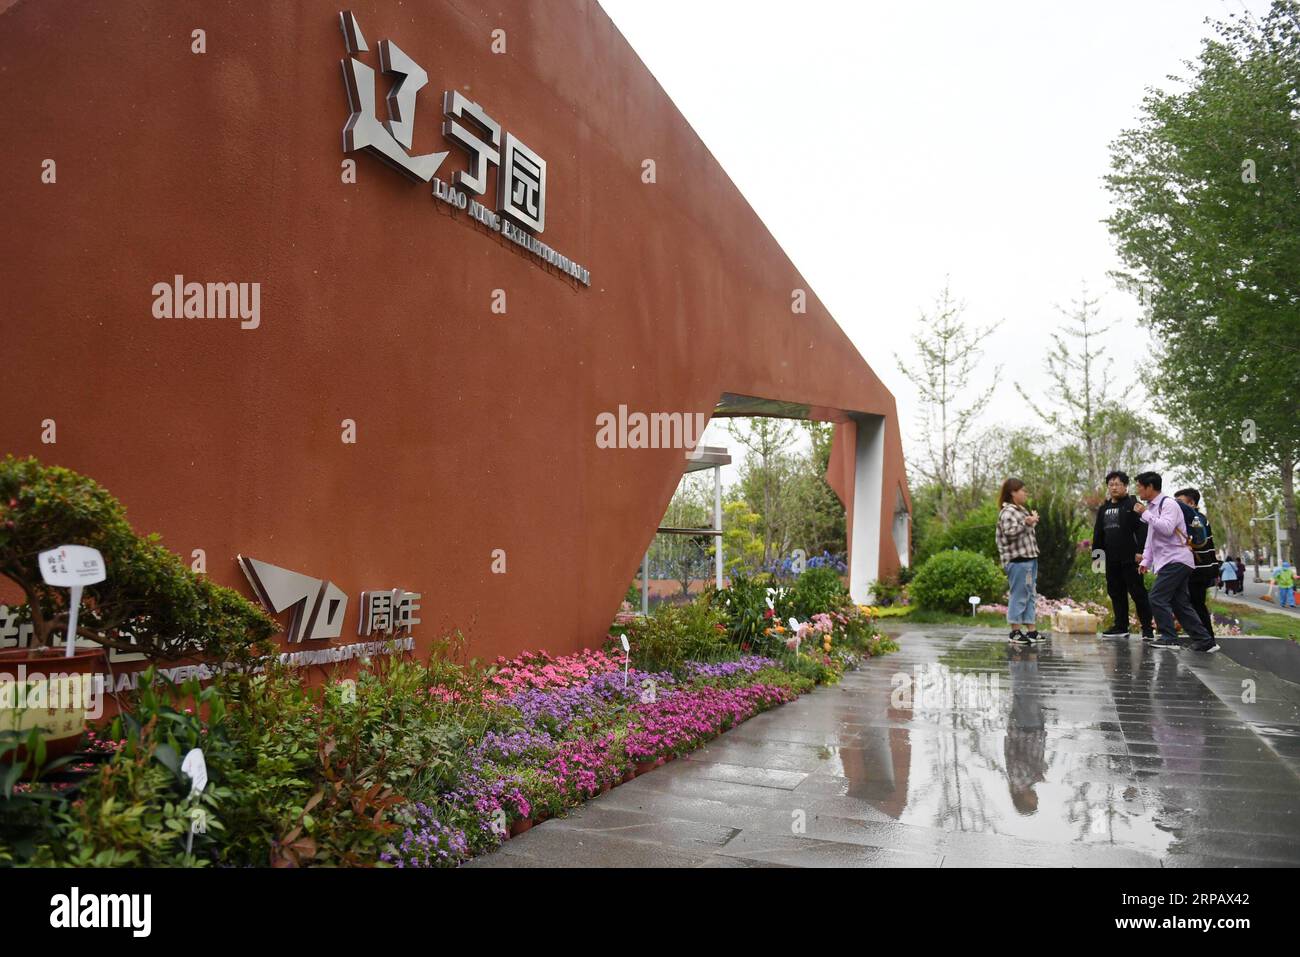 (190520) -- PECHINO, 20 maggio 2019 (Xinhua) -- foto scattata il 19 maggio 2019 mostra il giardino Liaoning dell'esposizione internazionale di orticoltura di Pechino a Pechino, capitale della Cina. La provincia di Liaoning si trova nella parte meridionale della Cina nord-orientale, con il Mare di Bohai e il Mar giallo a sud. Nel corso degli anni, il governo provinciale ha dato priorità allo sviluppo ecologico e ha posto il miglioramento ambientale al centro della sua agenda. Le condizioni ecologiche della provincia sono state migliorate grazie alla sistematica conservazione dell'ambiente naturale, alla gestione complessiva della r Foto Stock